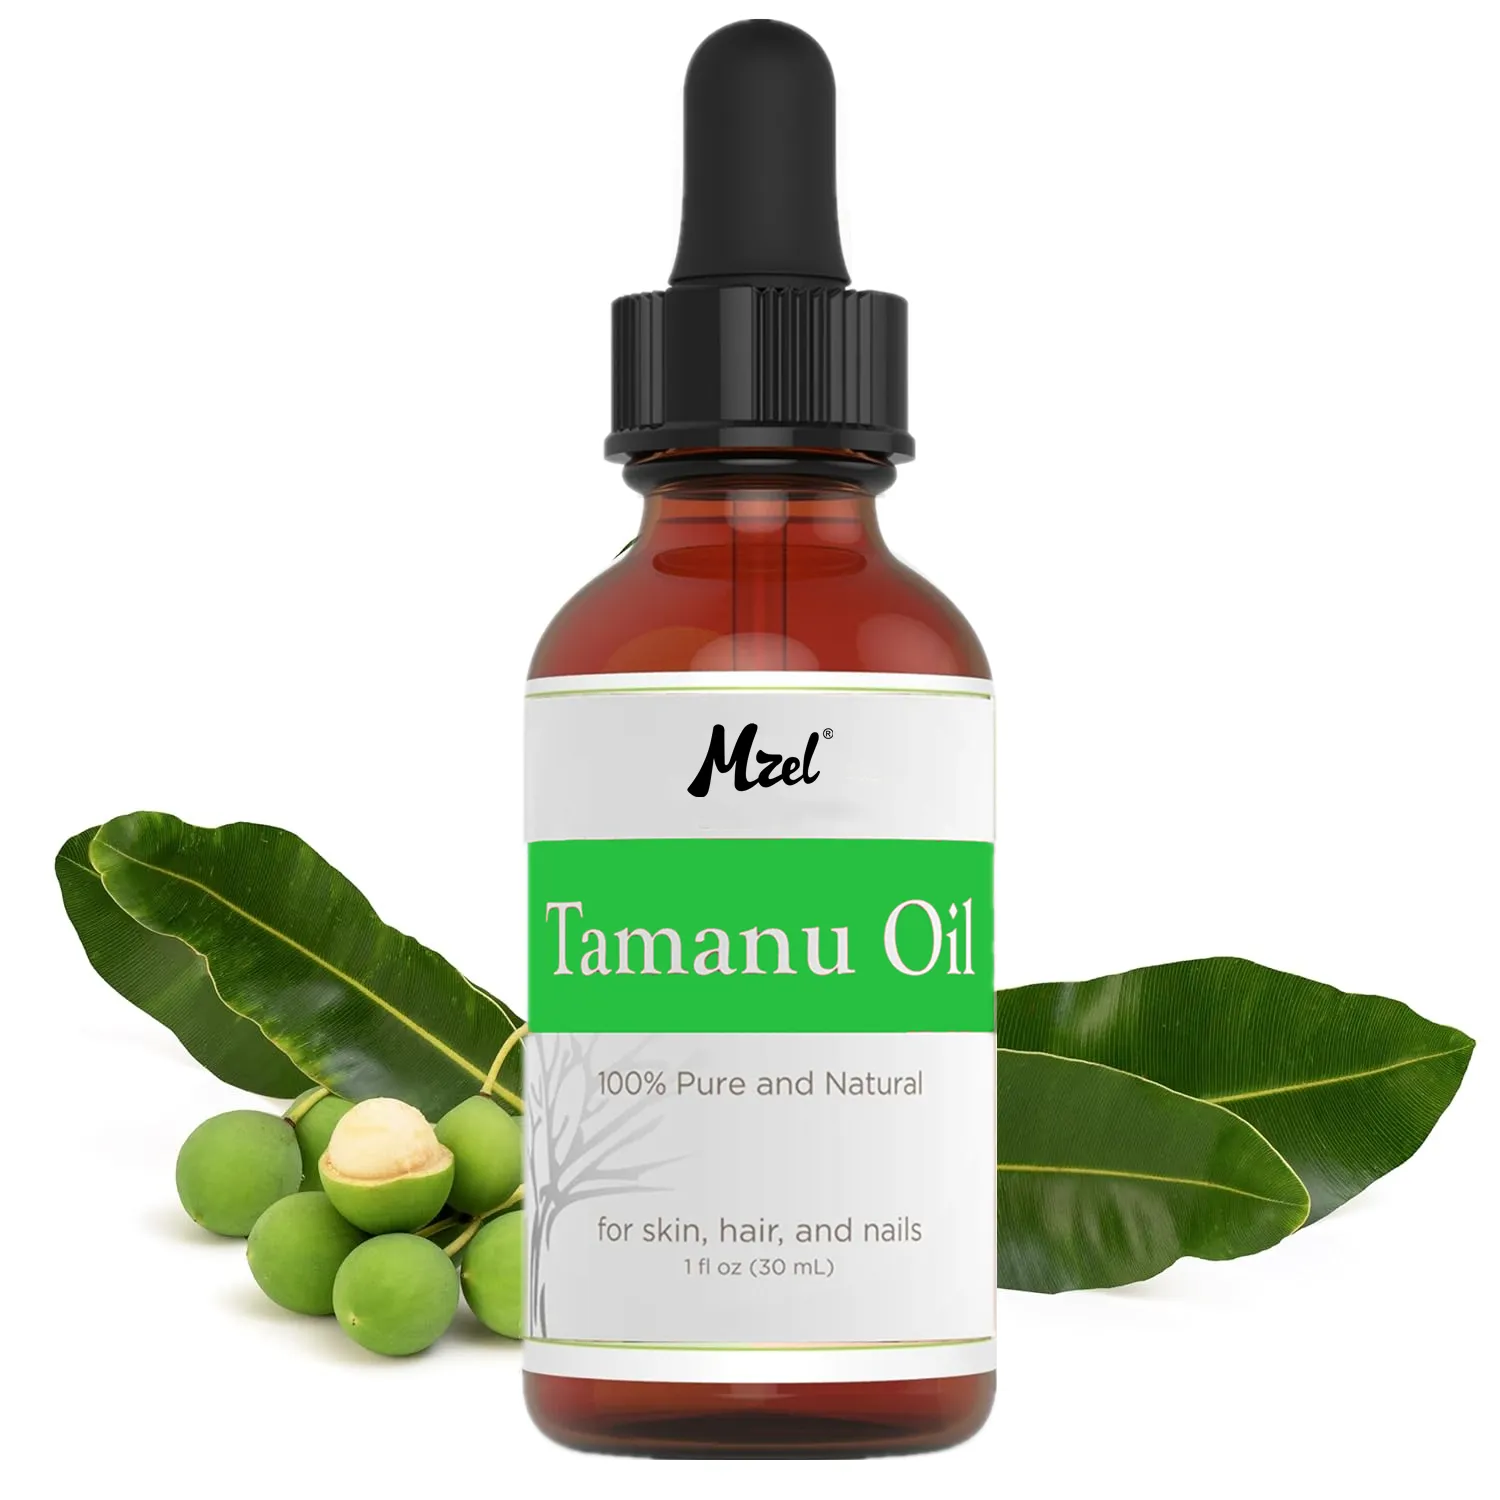 Óleo Tamanu Orgânico - Óleo de semente Tamanu 100% natural prensado a frio para cabelos, rosto, corpo, lábios, unhas